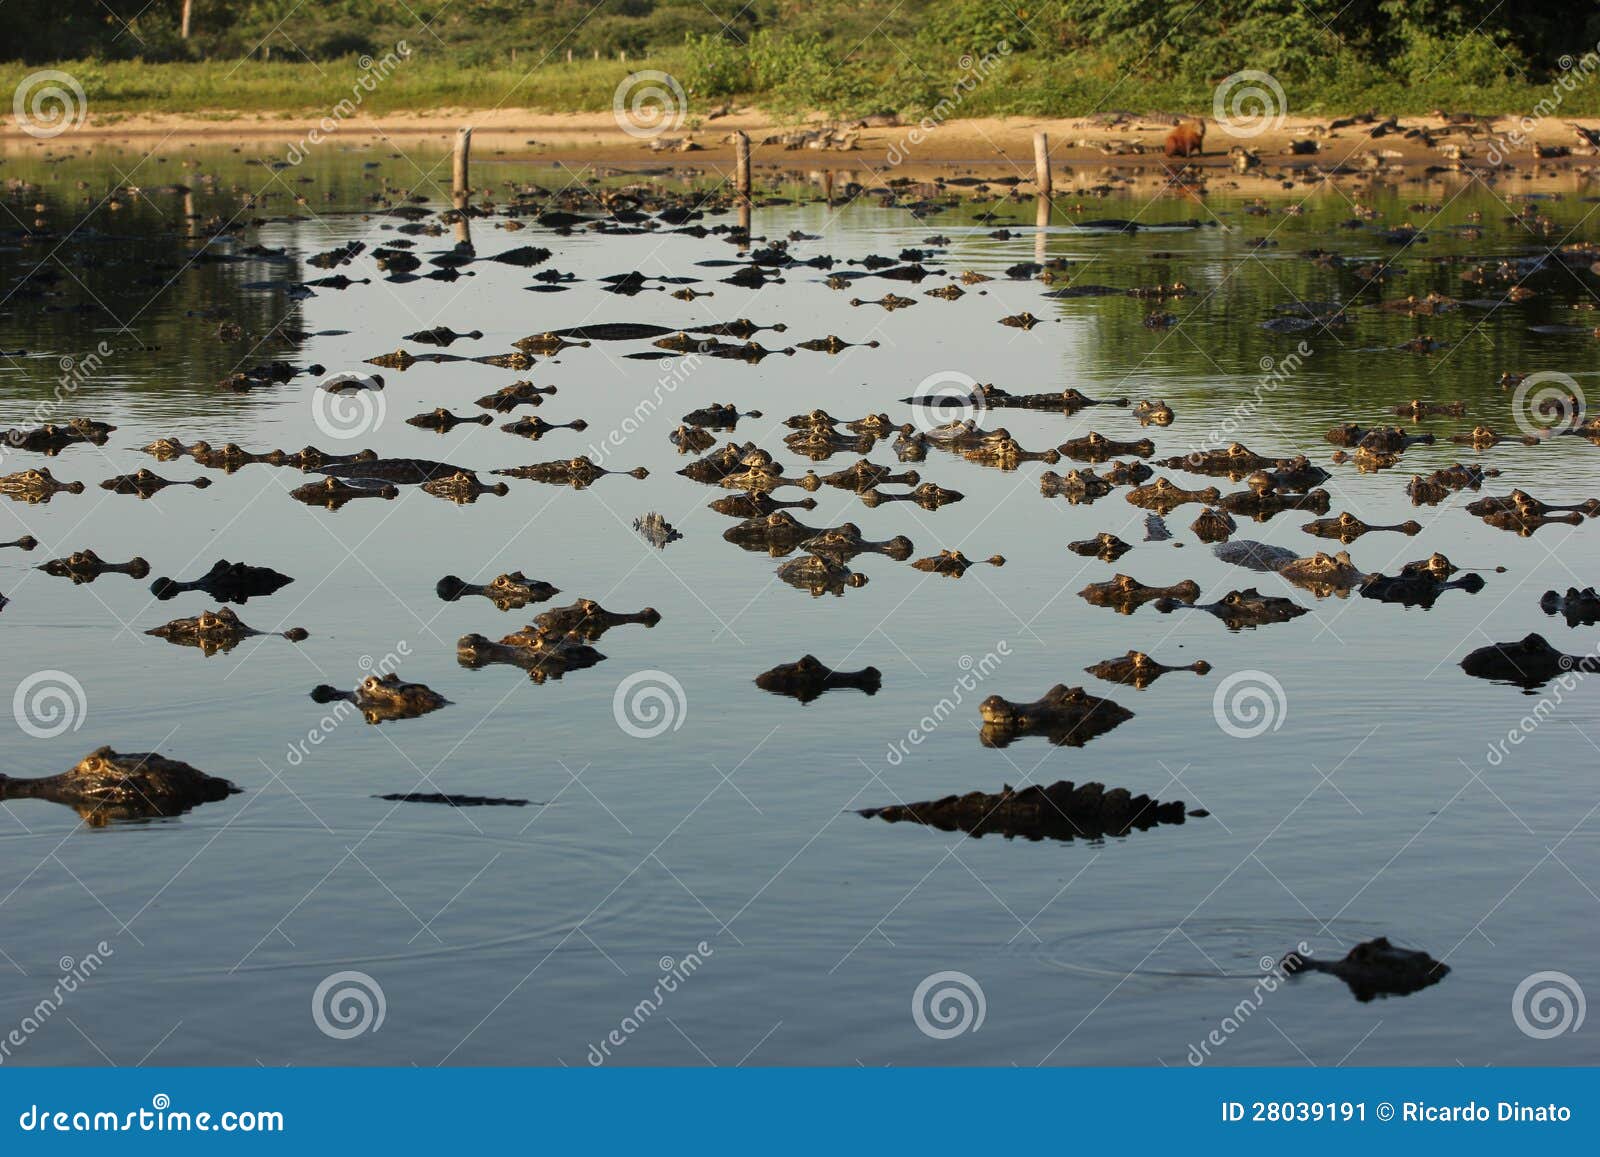 hundreds of caimans at pantanal